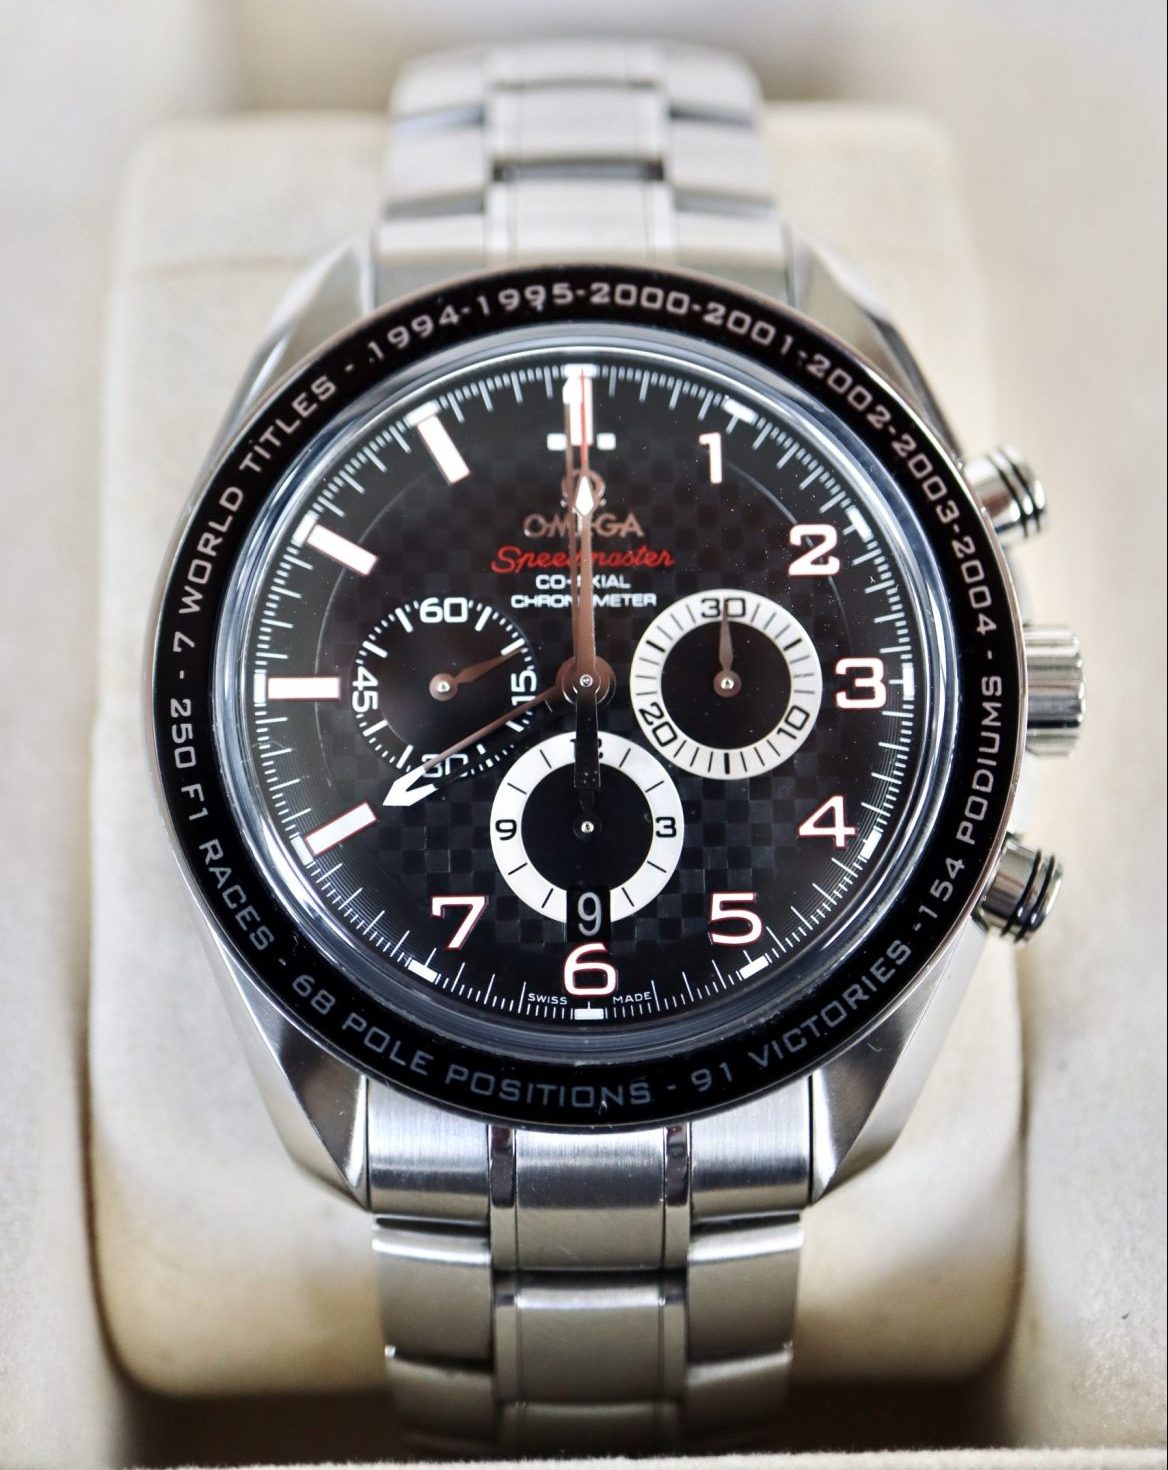 Omega Speedmaster Legend Michael Schumacher Chronograph Ref. 321.30.44.50.01.001 “WORN”